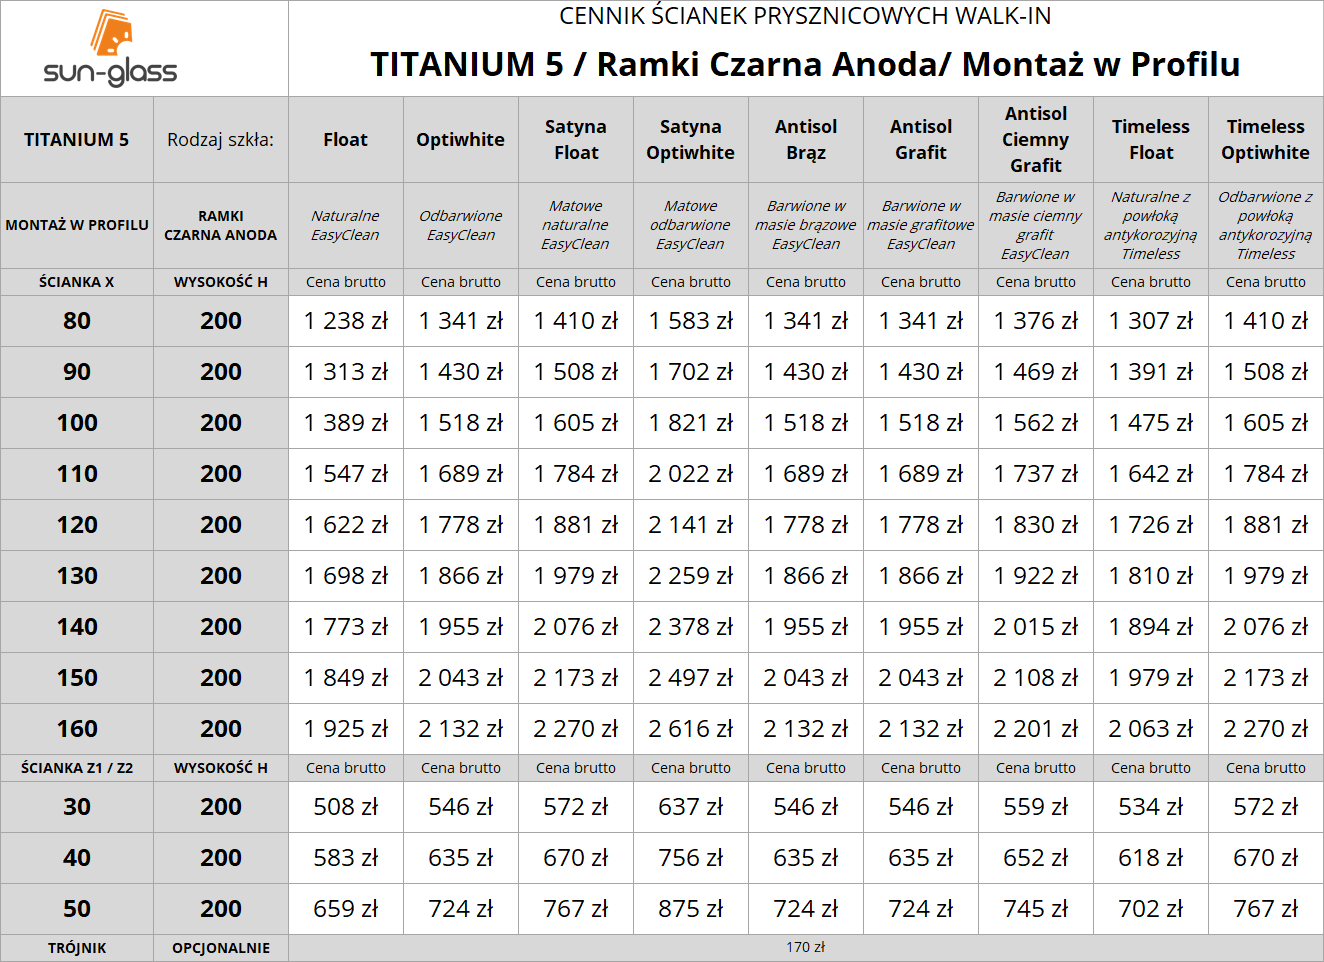 TITANIUM 5 / RAMKI